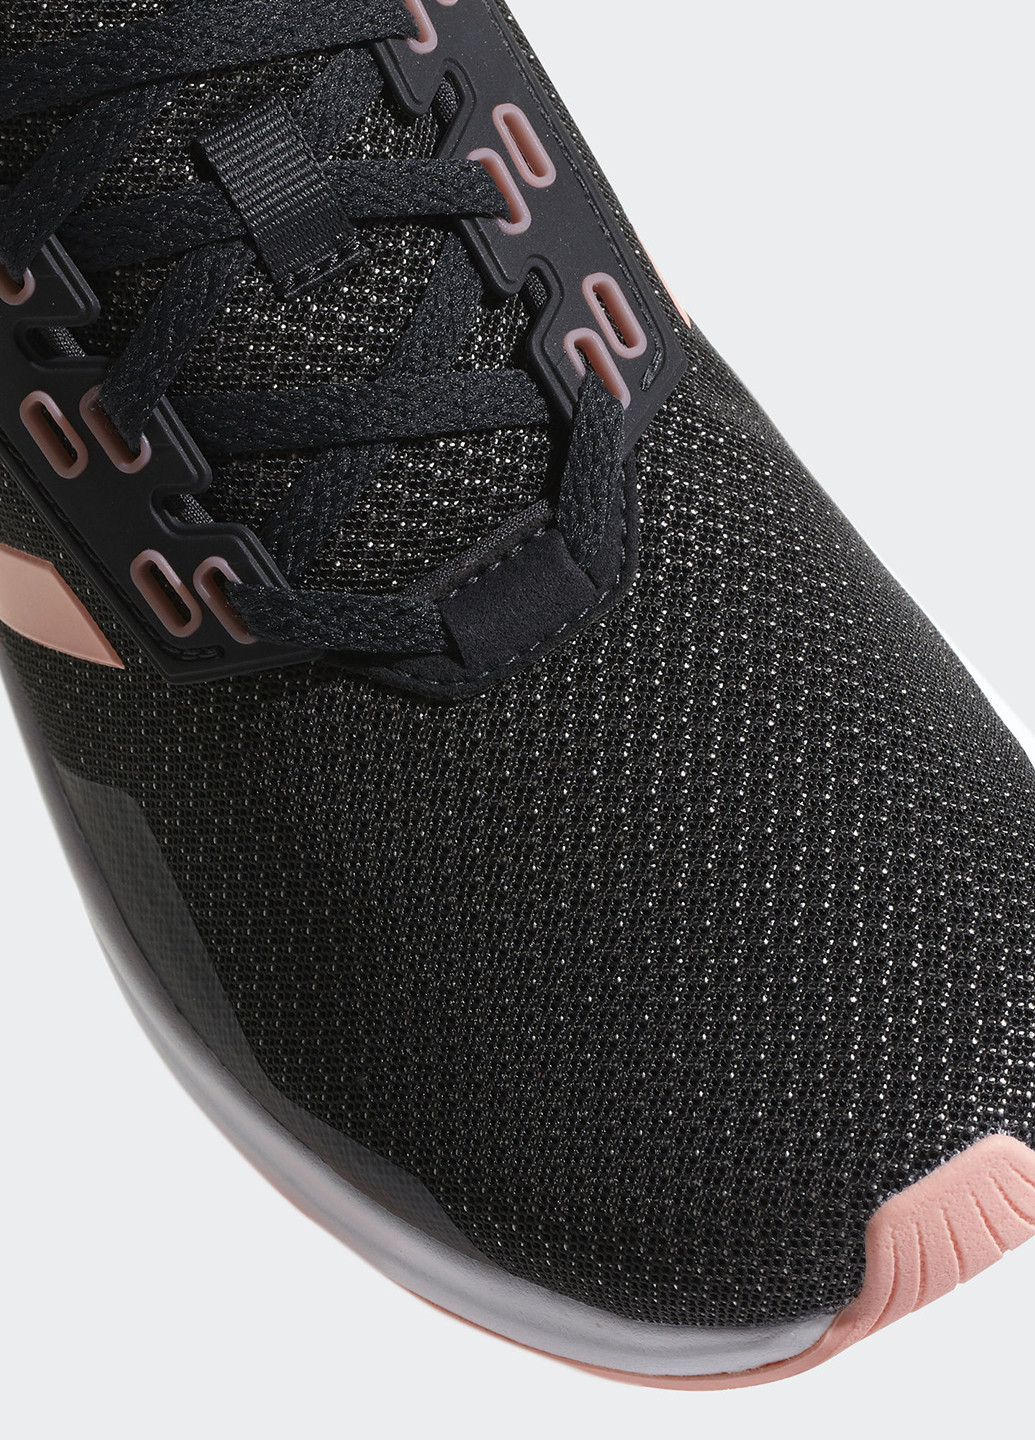 Темно-серые всесезонные кроссовки adidas Duramo 9